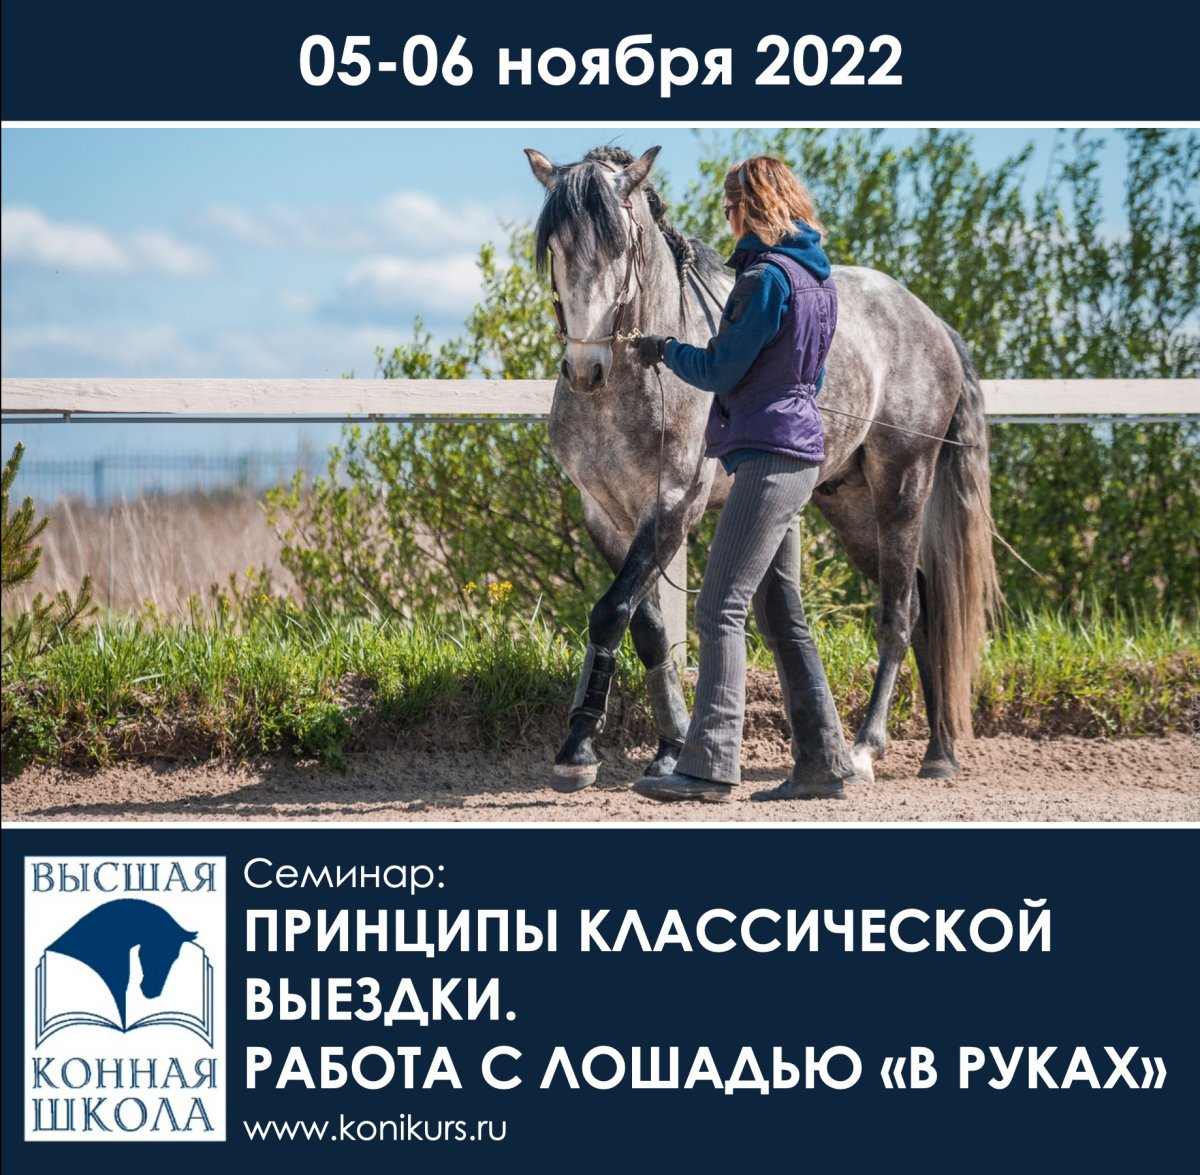 Приглашаем 05-06 ноября на семинар: "Принципы классической выездки. Работа с лошадью «в руках»"!